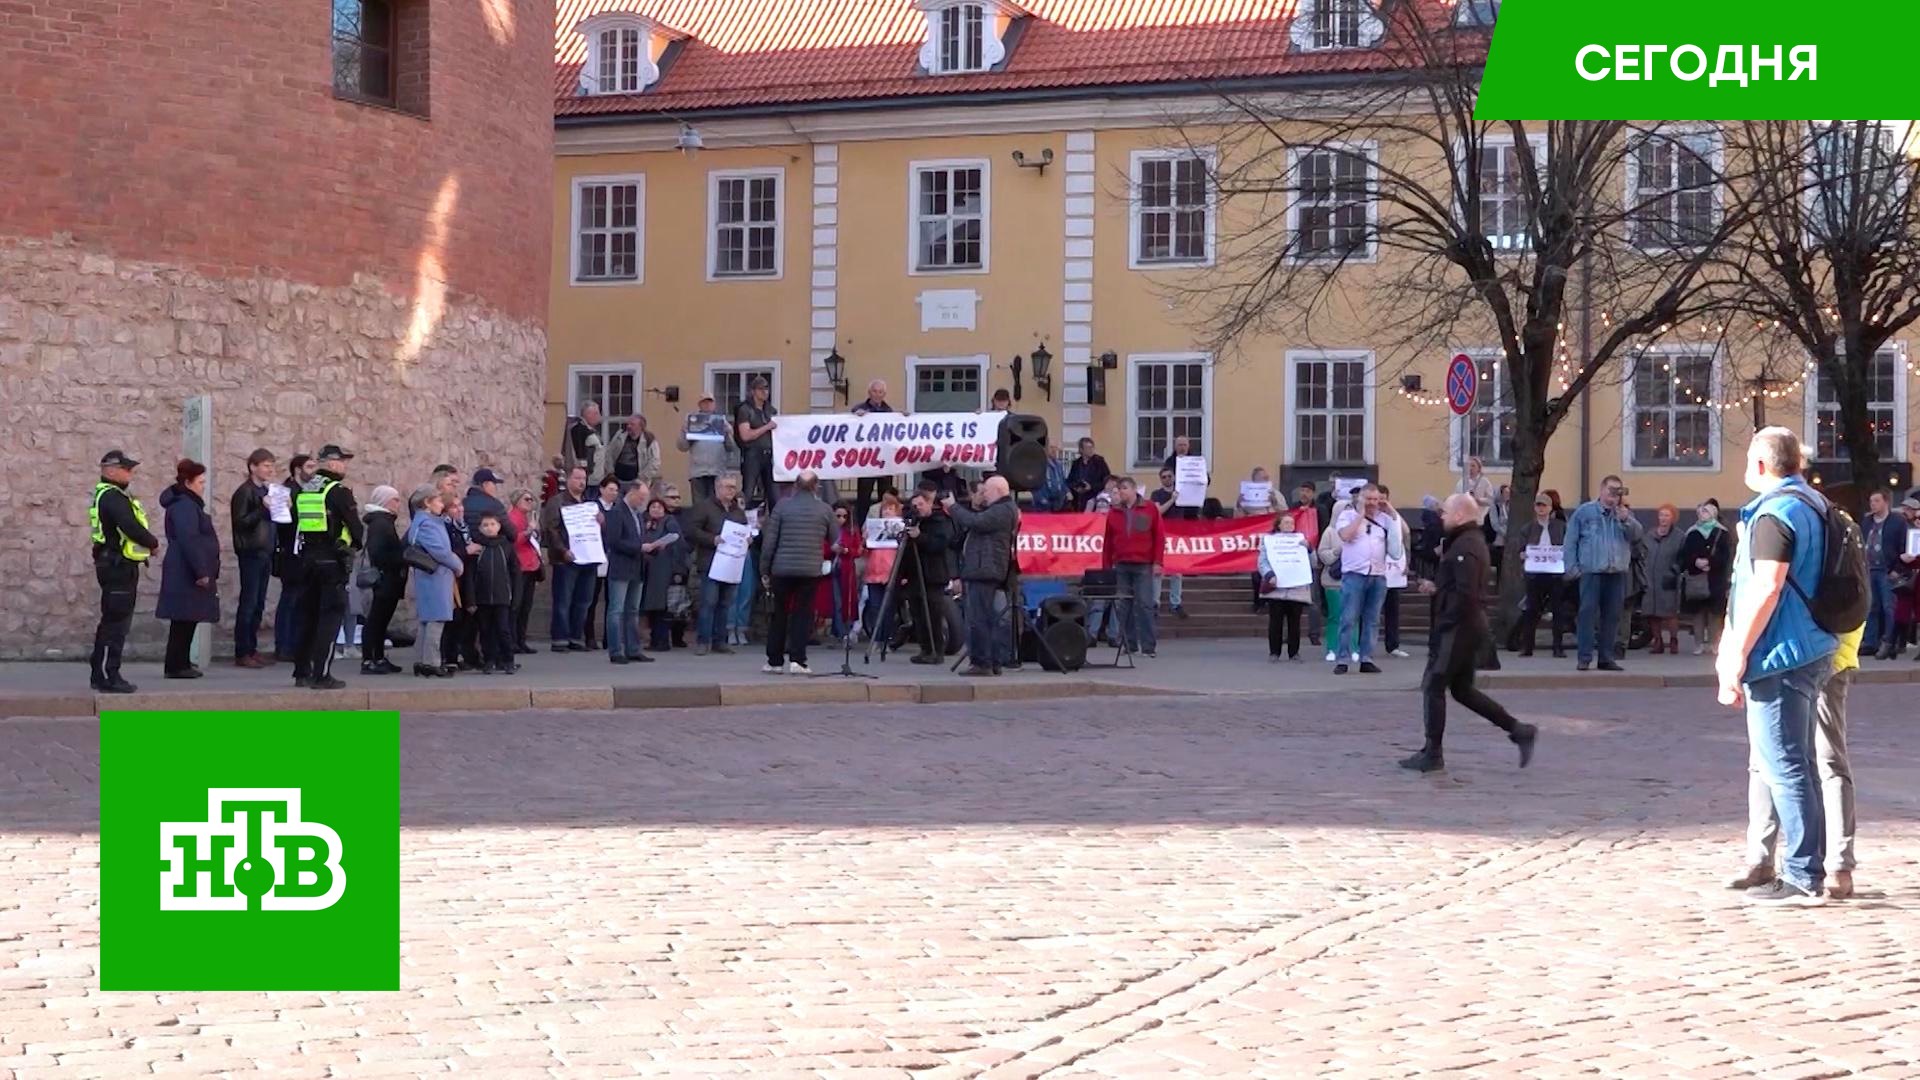 В Риге прошел митинг в защиту русского языка в школах